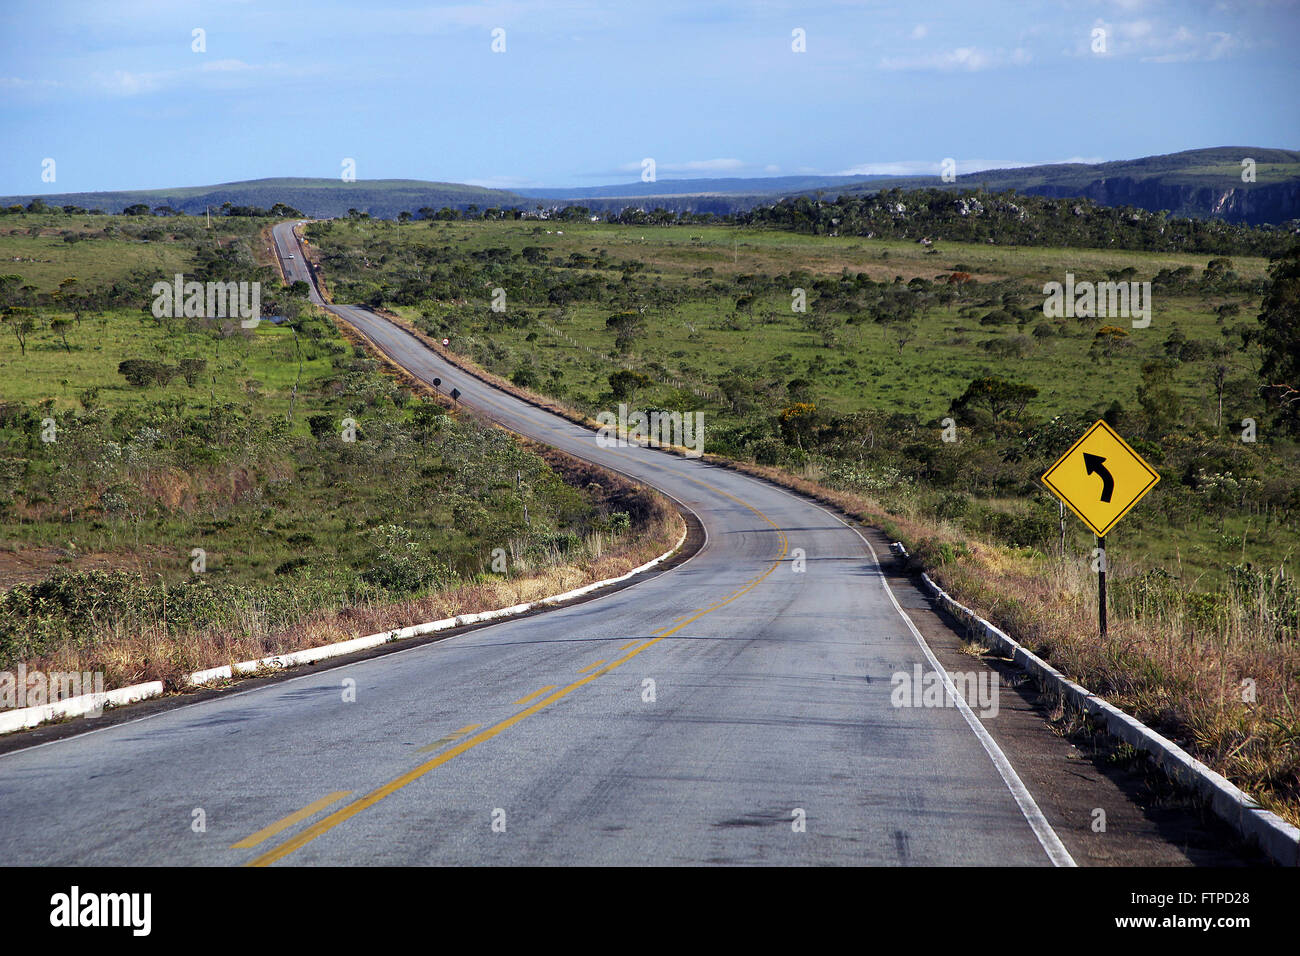 La carretera federal BR-010 en la región de la Chapada dos Foto de stock